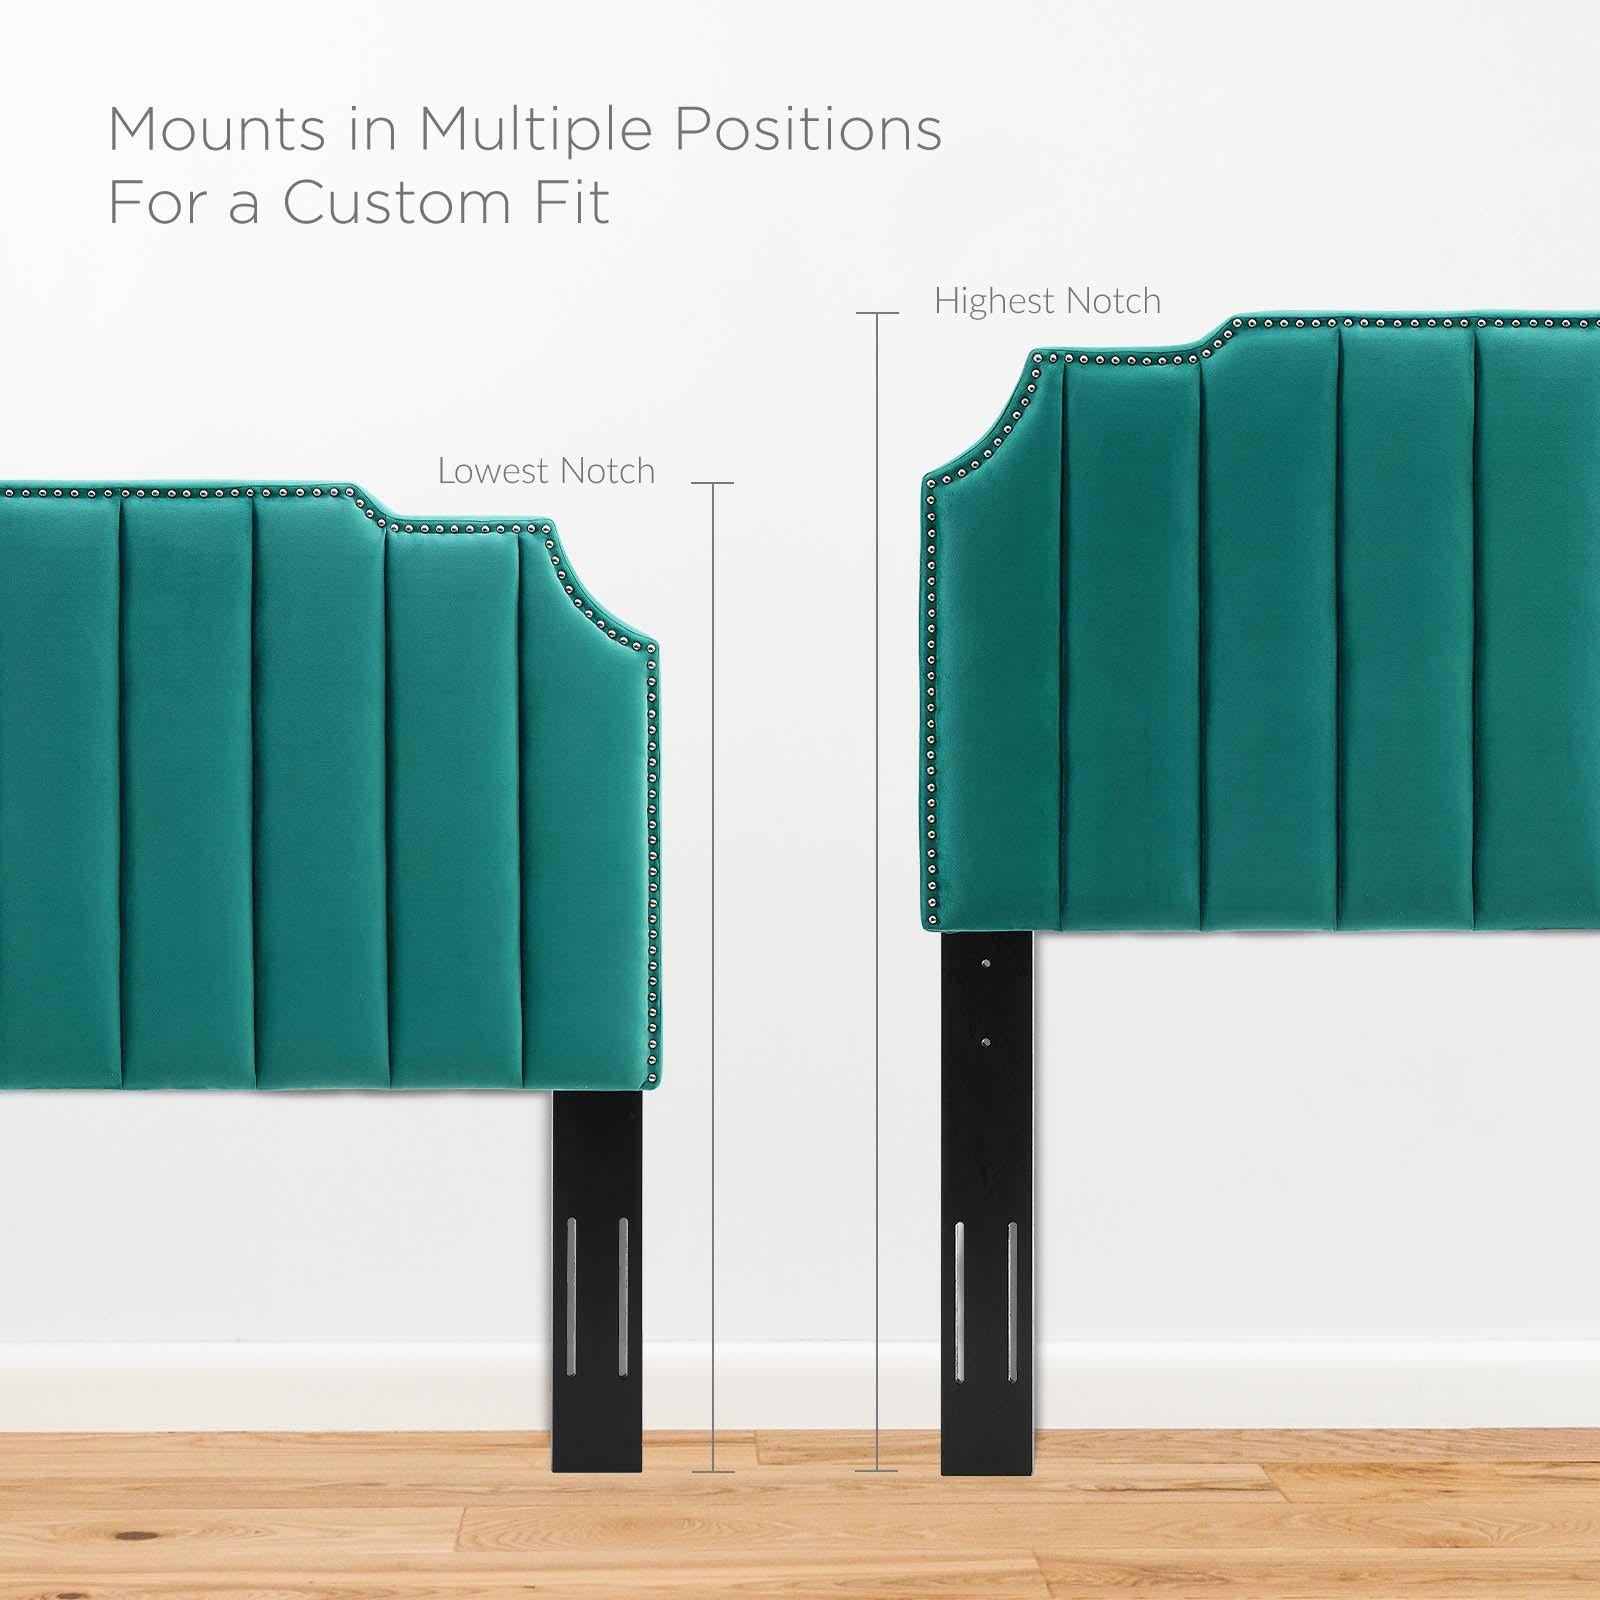 Modway Furniture Modern Colette Queen Performance Velvet Platform Bed - MOD-6583